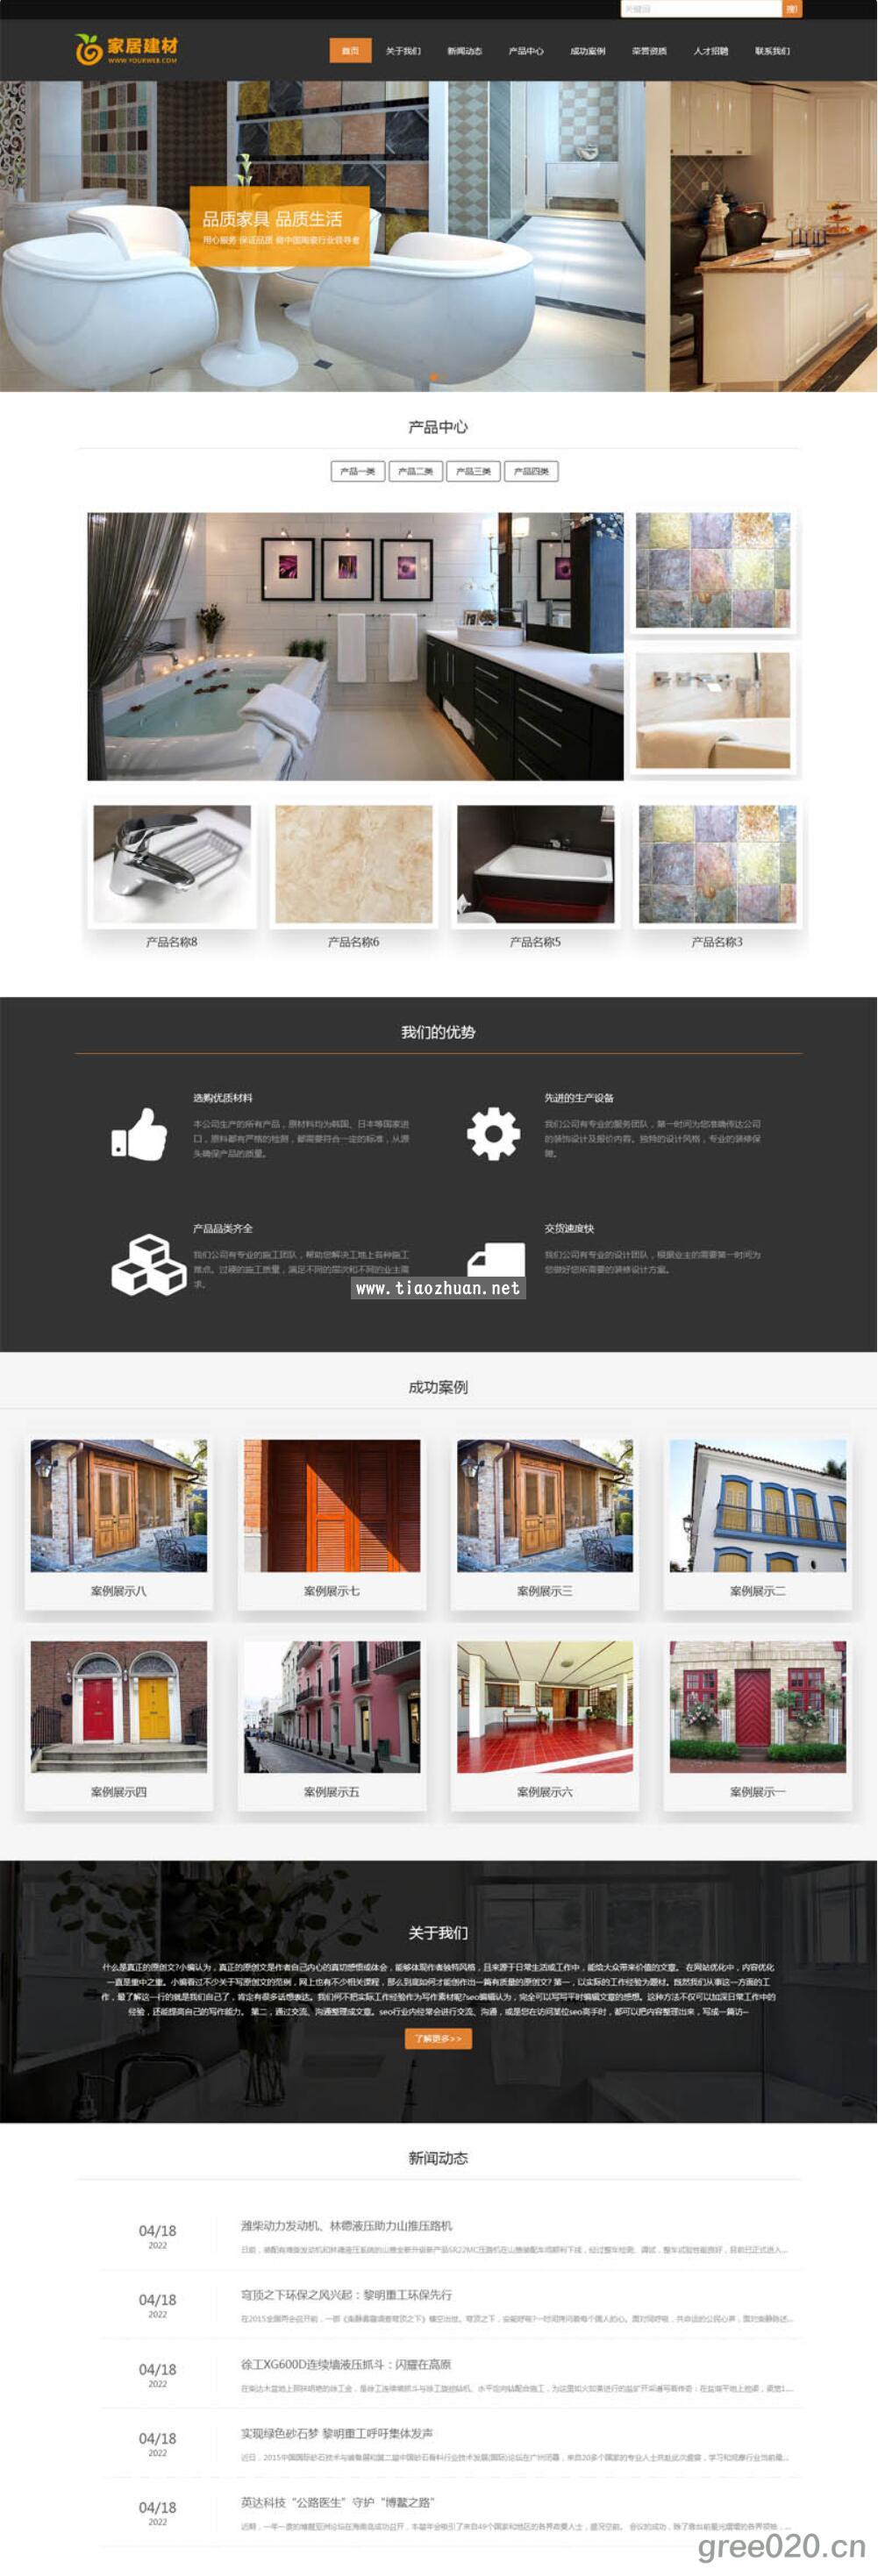 建材瓷砖网站模板 家居装修材料网站源码下载